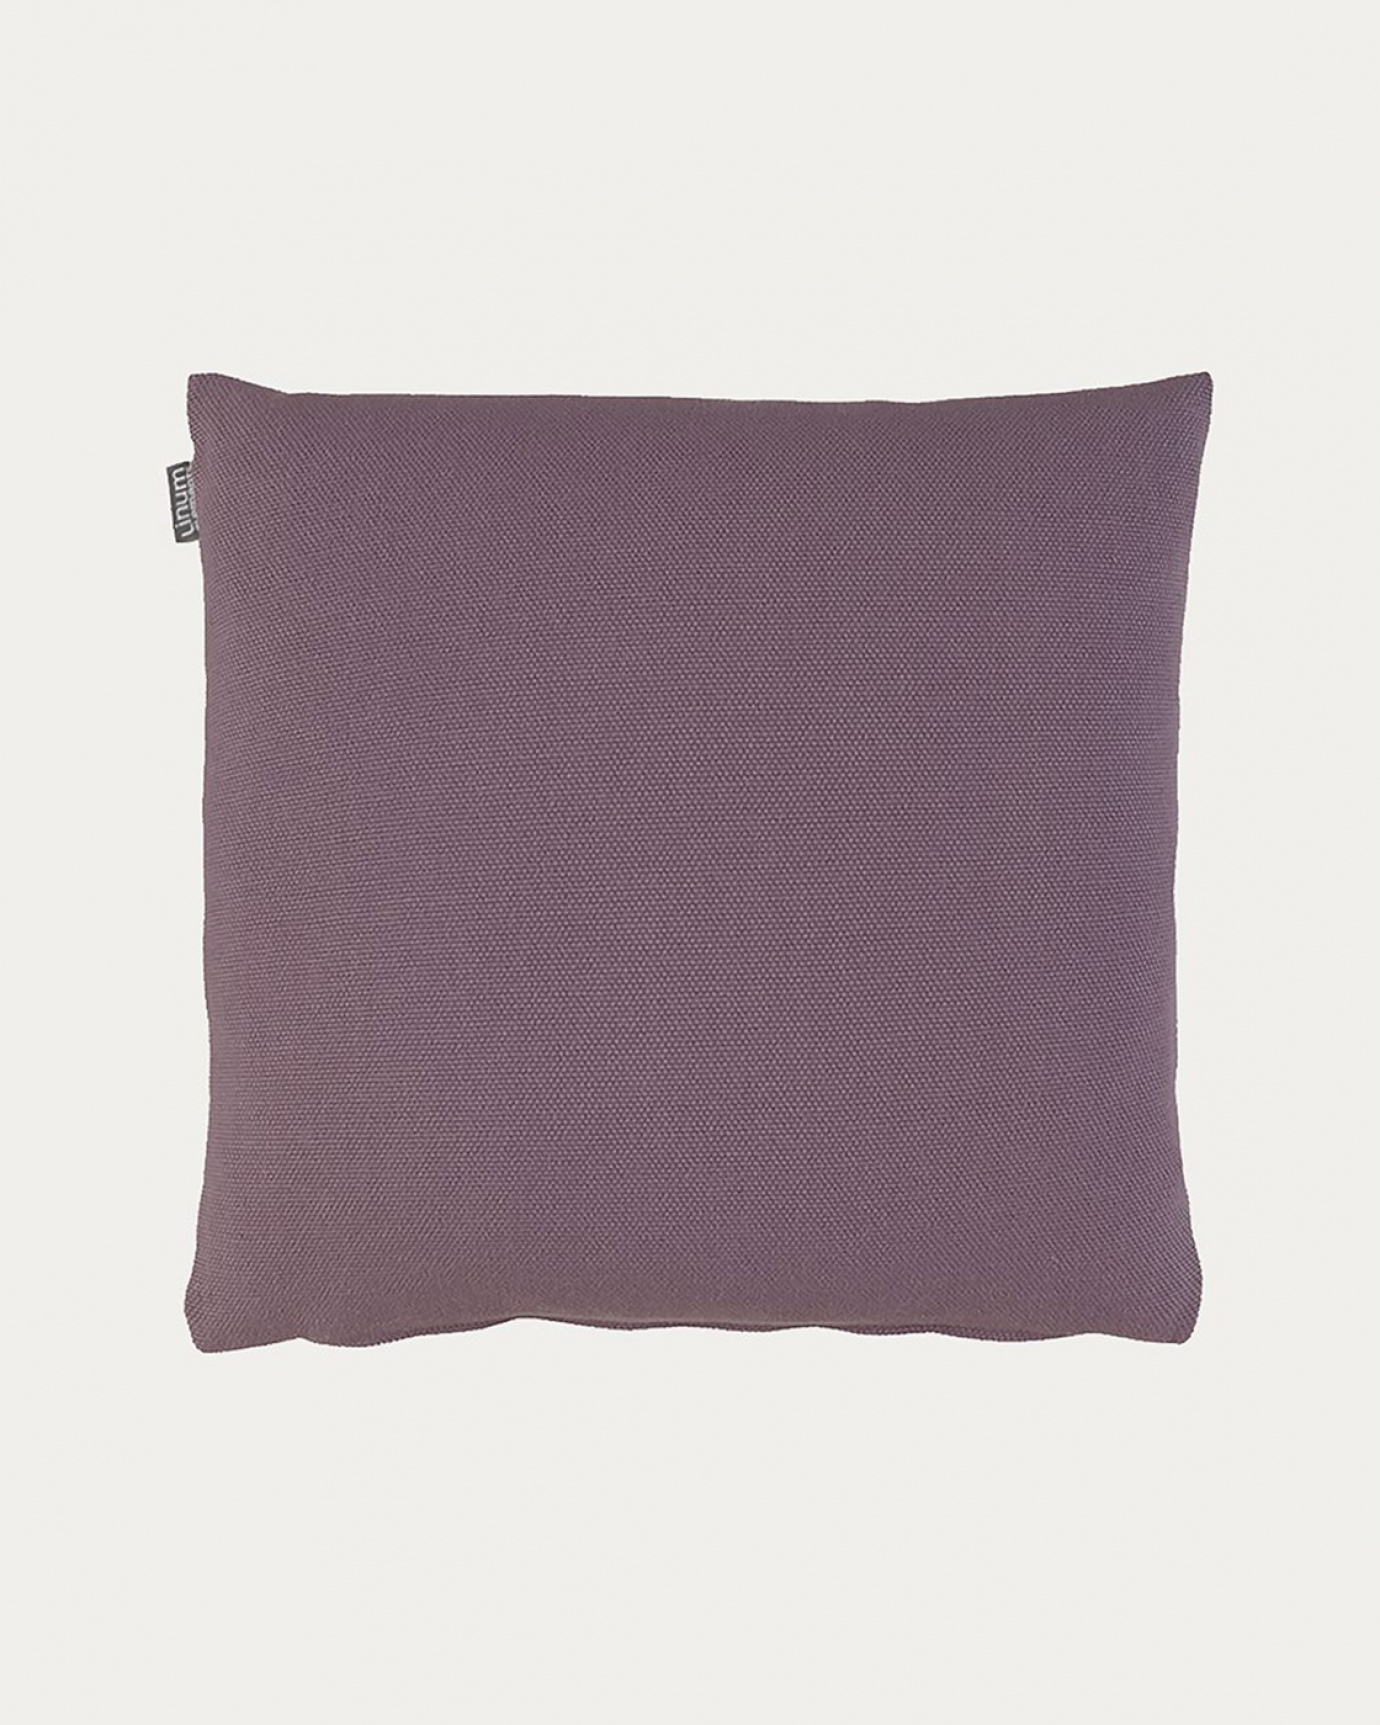 Produktbild dunkles pastellviolett PEPPER Kissenhülle aus weicher Baumwolle von LINUM DESIGN. Einfach zu waschen und langlebig für Generationen. Größe 50x50 cm.